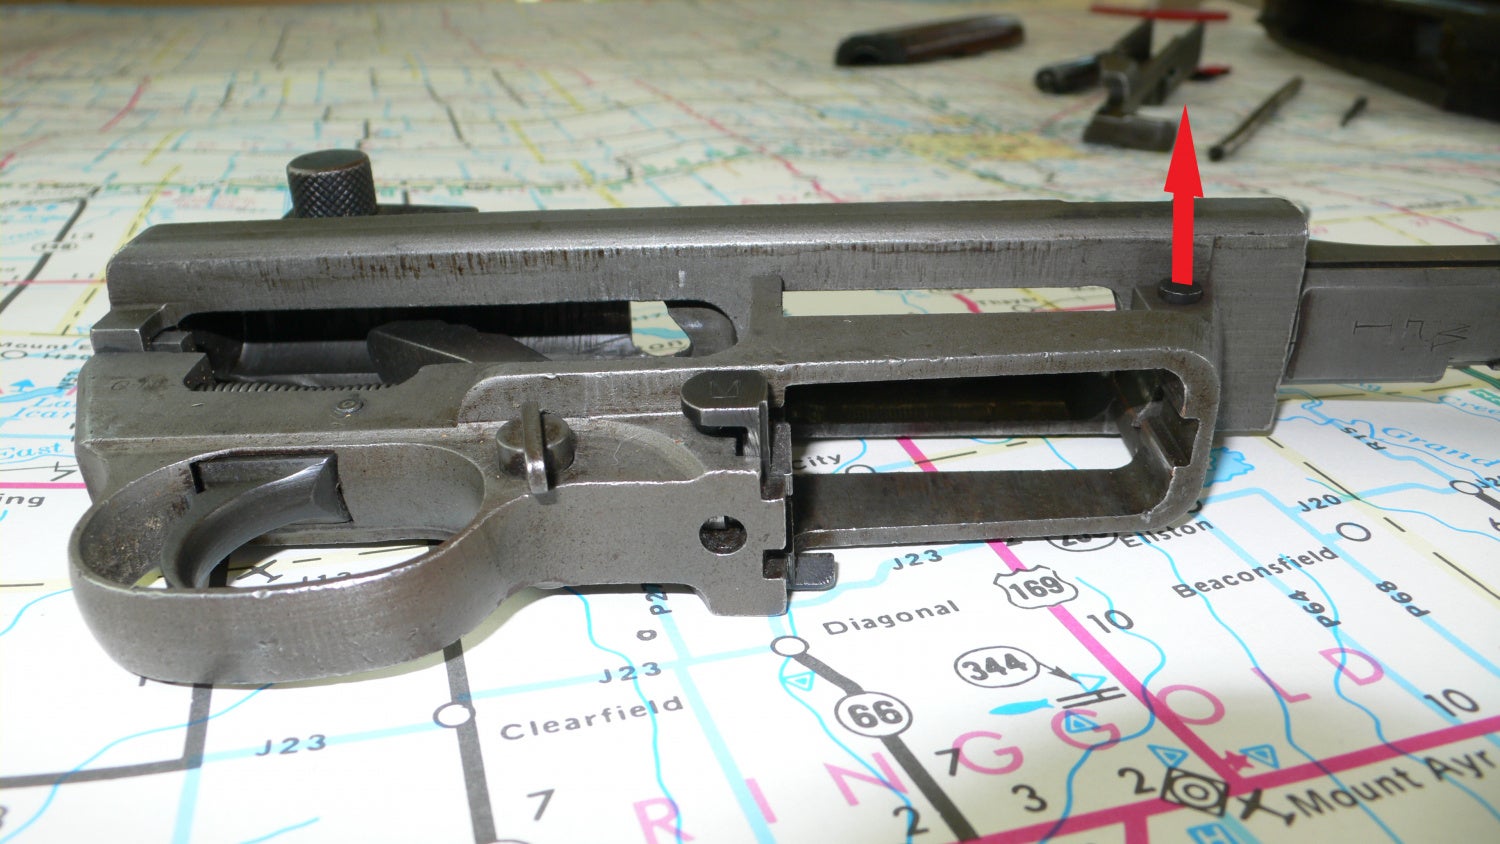 TFB Field Strip M1 Carbine